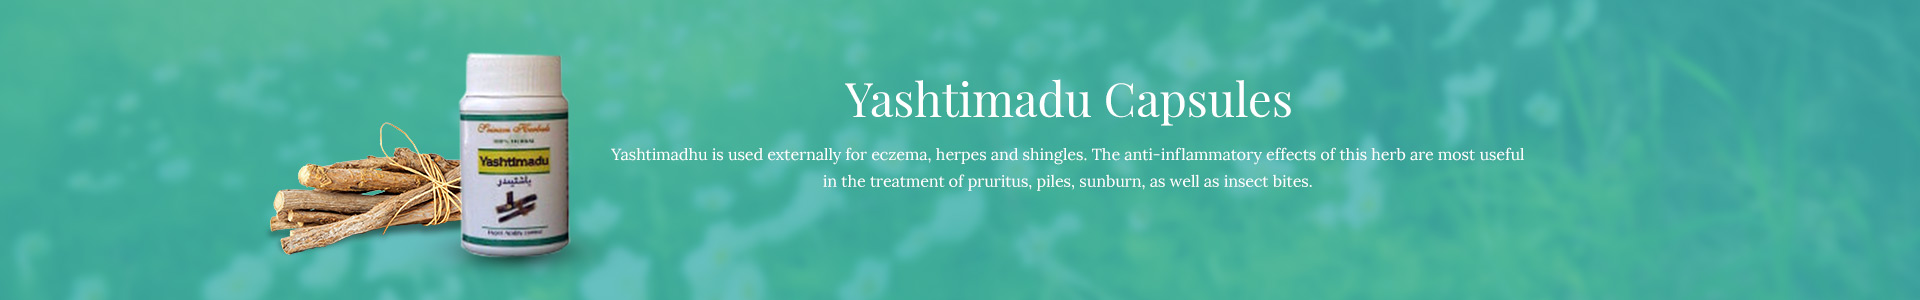 yashtimadu-capsules